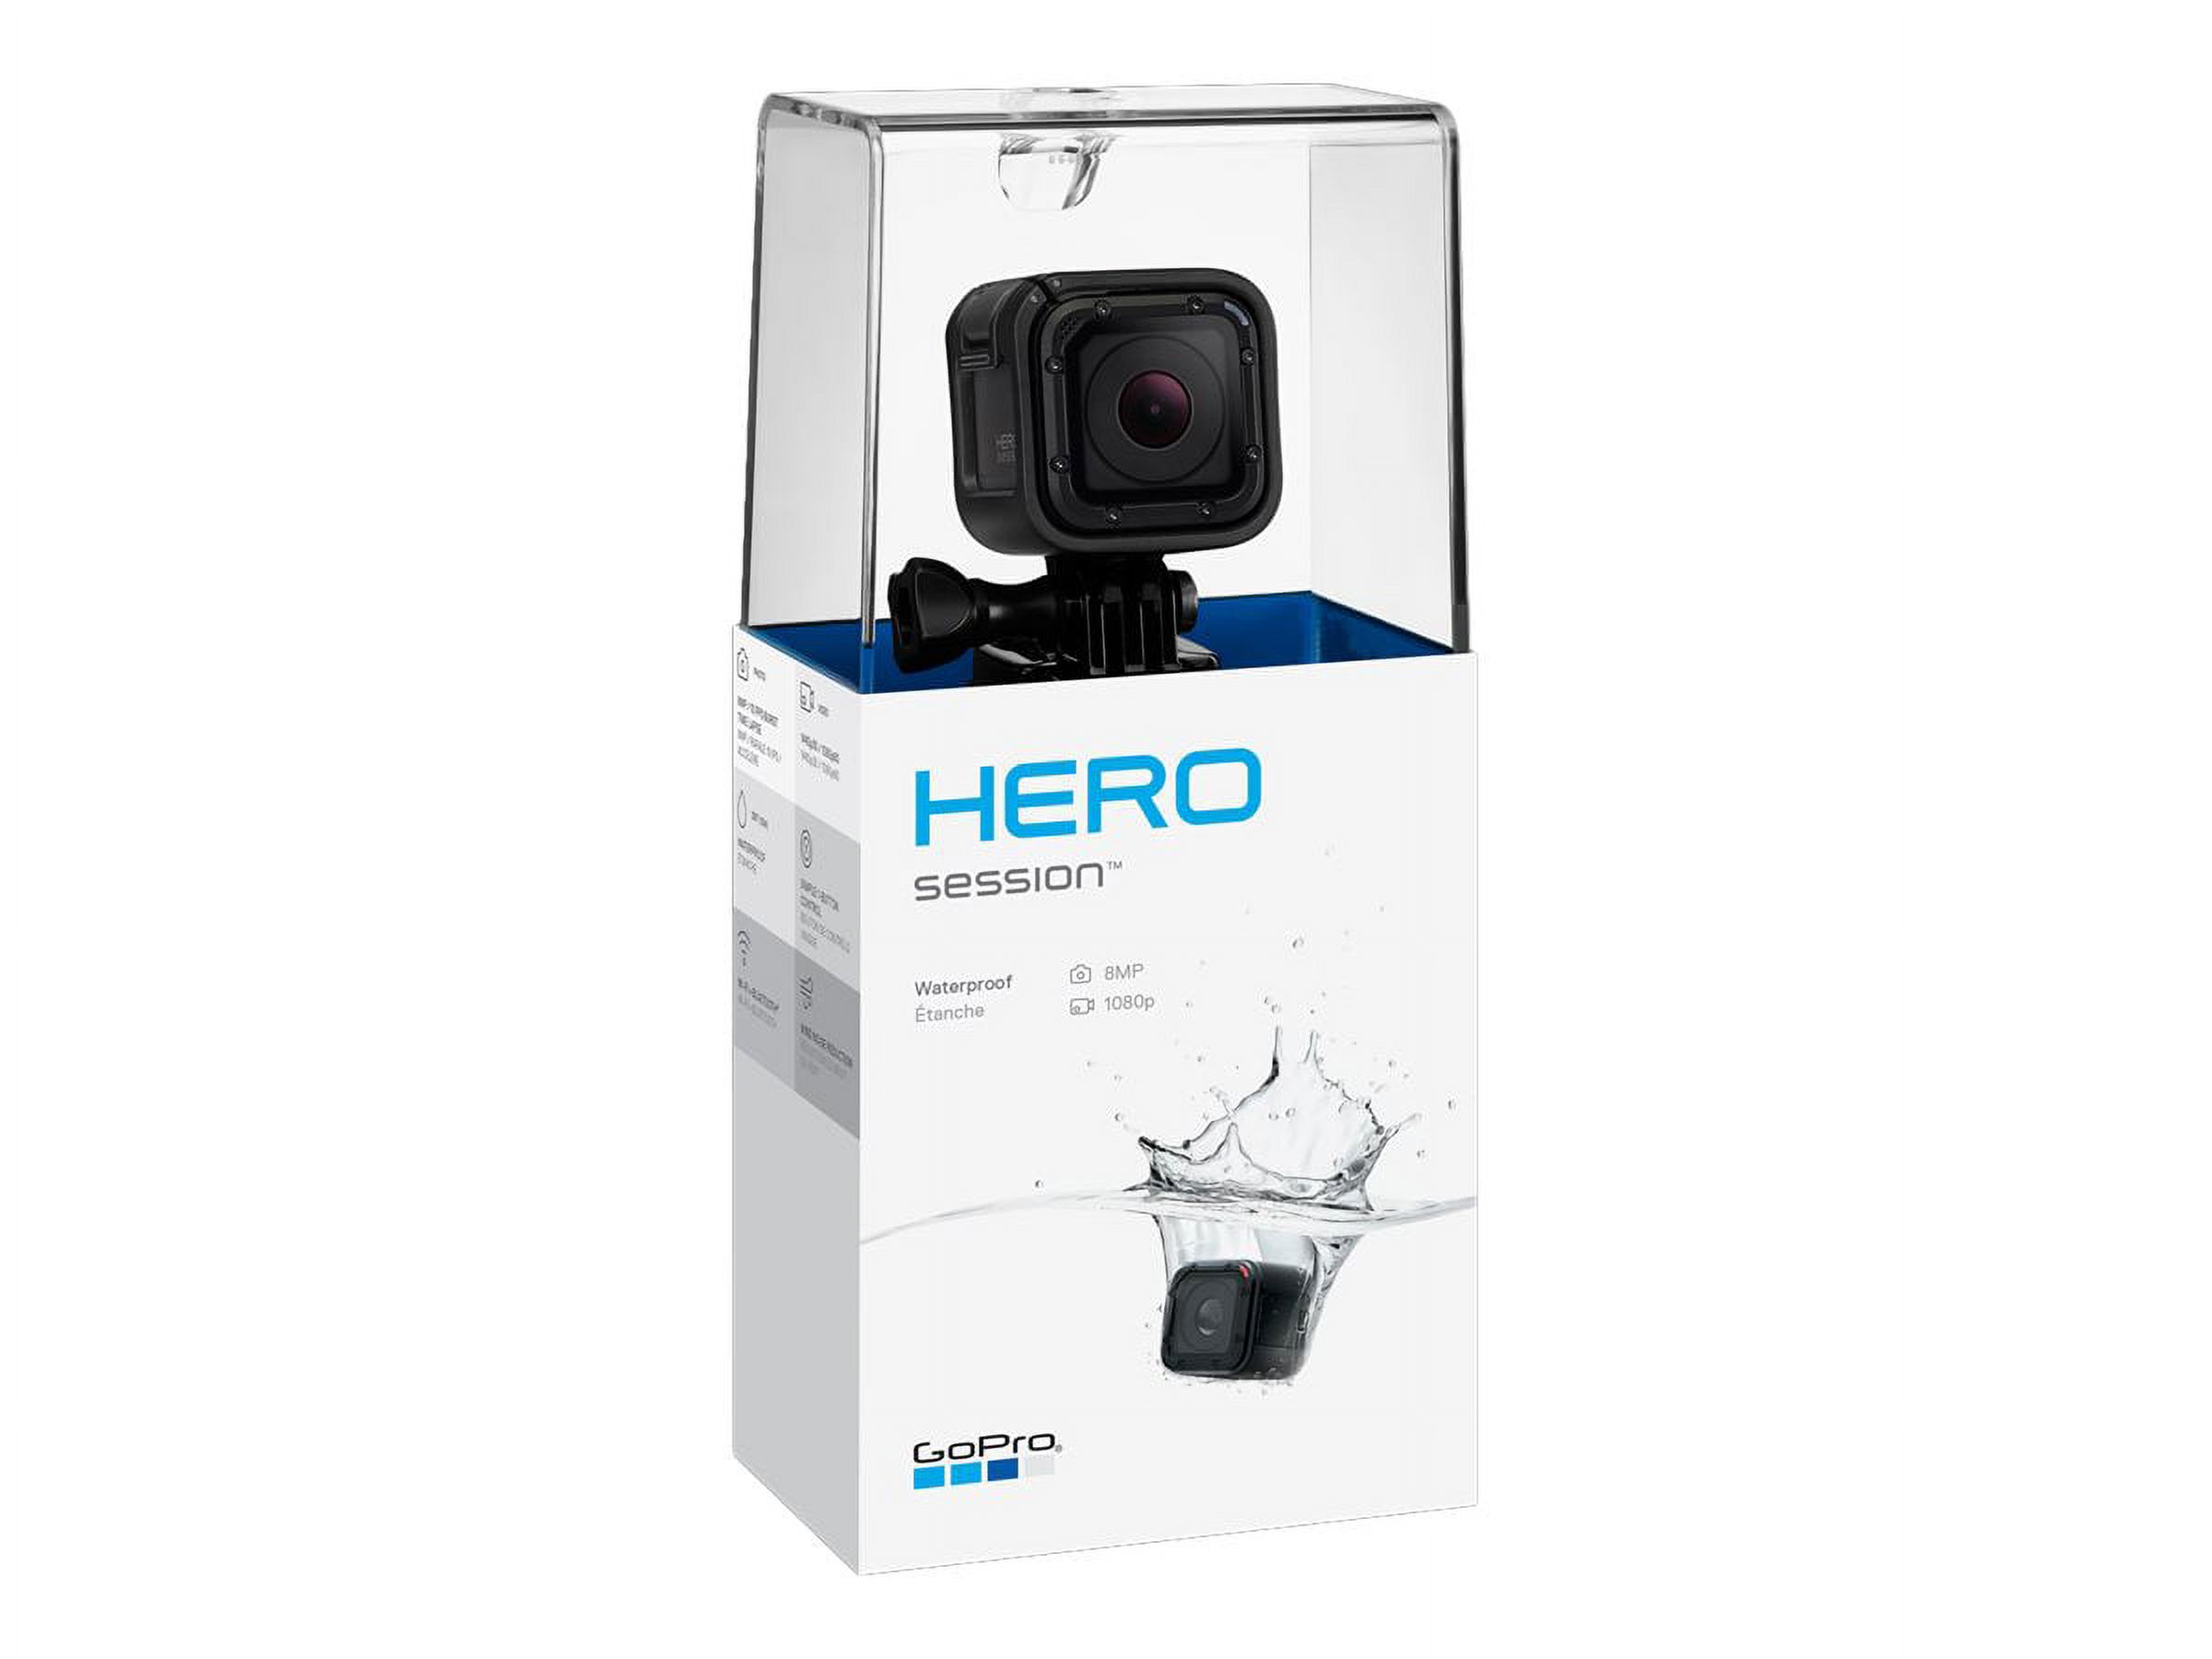 GoPro HERO Session - Bonus Bundle - action camera - 1440p / 30 fps - 8.0 MP - Wireless LAN - underwater up to 30ft - image 3 of 6